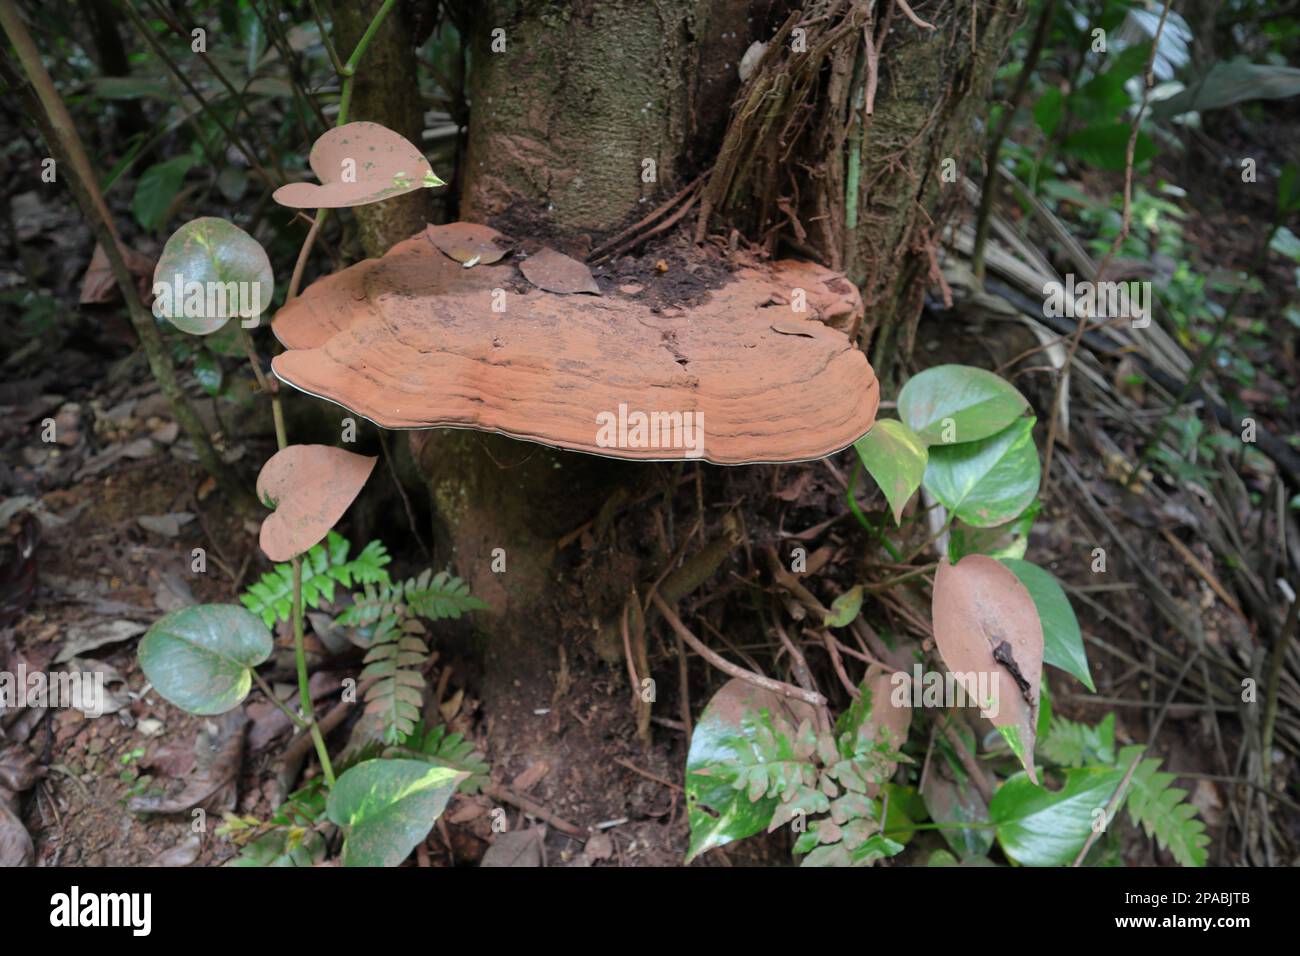 Un grand champignon rougeâtre appelé comme support de l'artiste (Ganoderma Applanatum) pousse à la base d'une tige d'arbre en train de mourir Banque D'Images